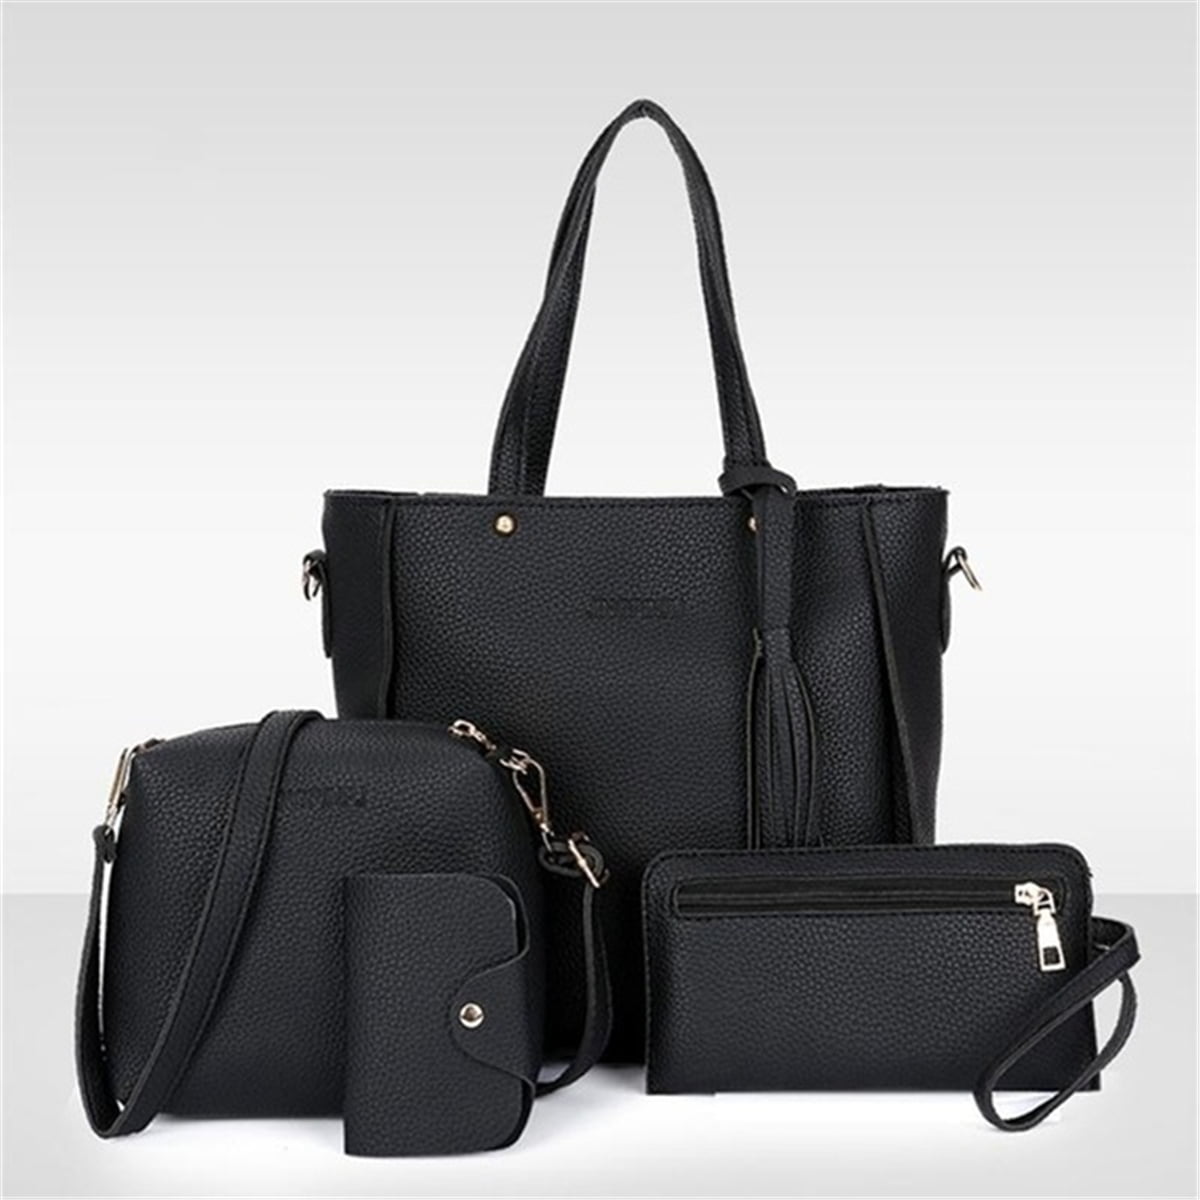 4pcs/set Lady Women Leather Handbags Messenger Shoulder Bags Purse Satchel Tote